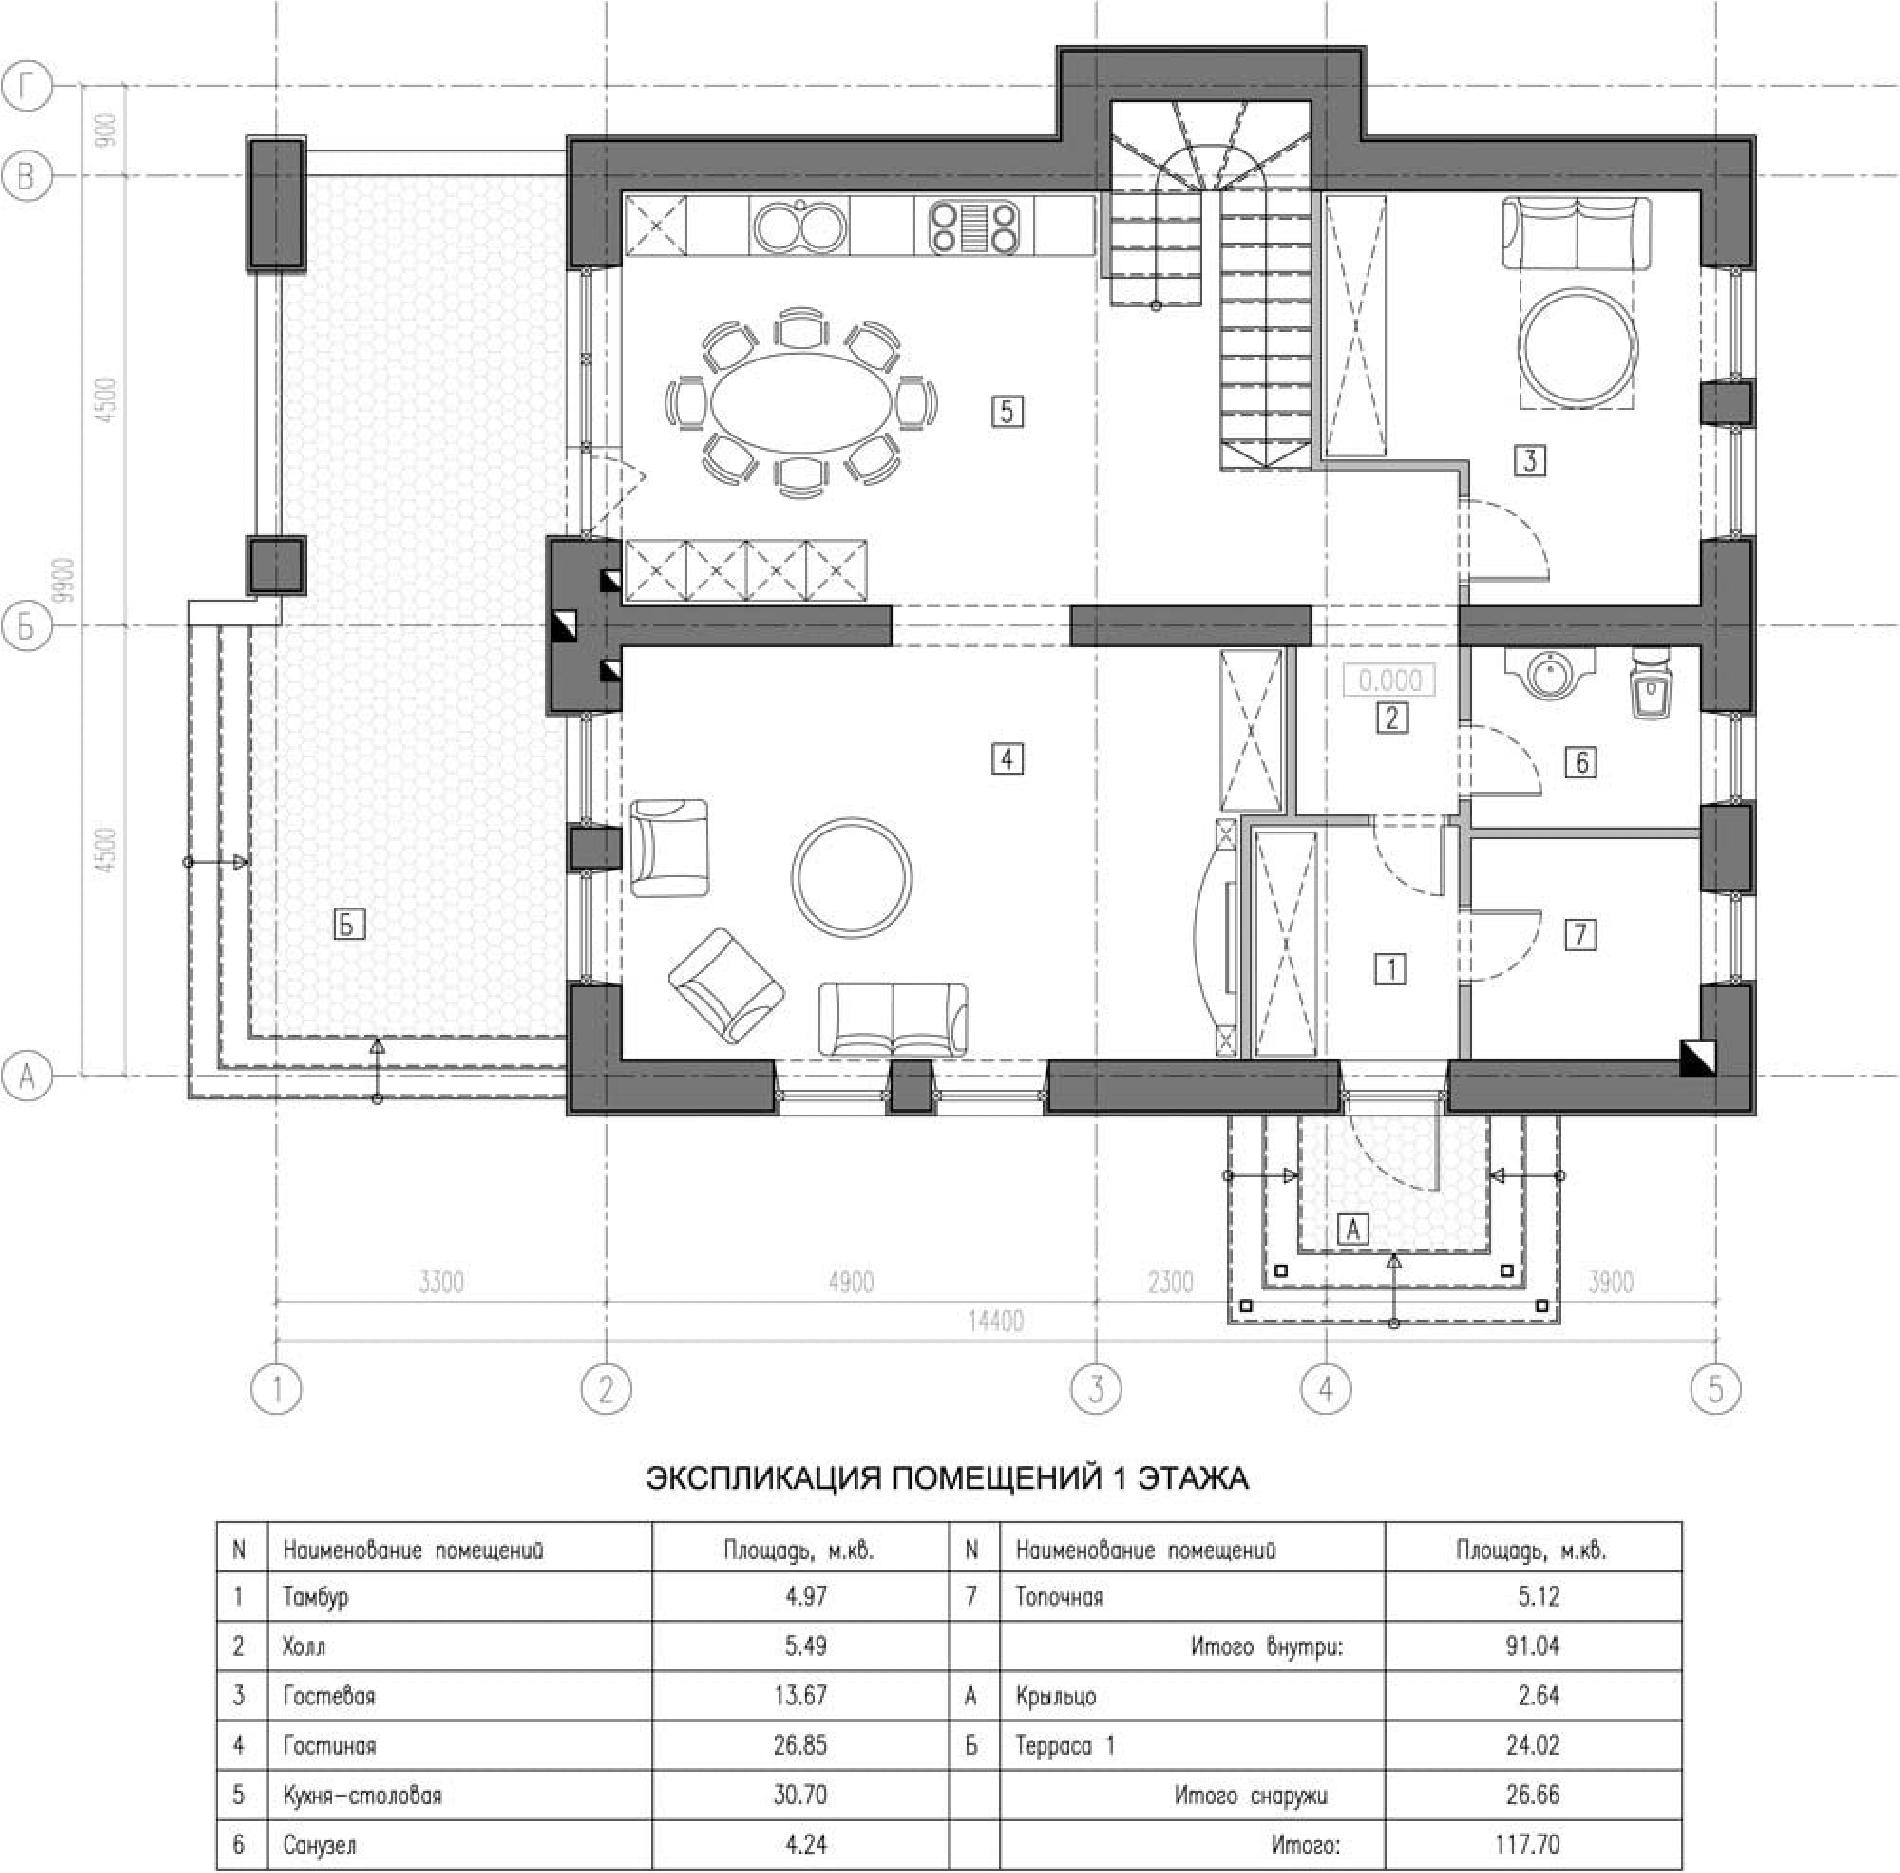 Планировка проекта дома №kr-155 kr-155_p1-min.jpg